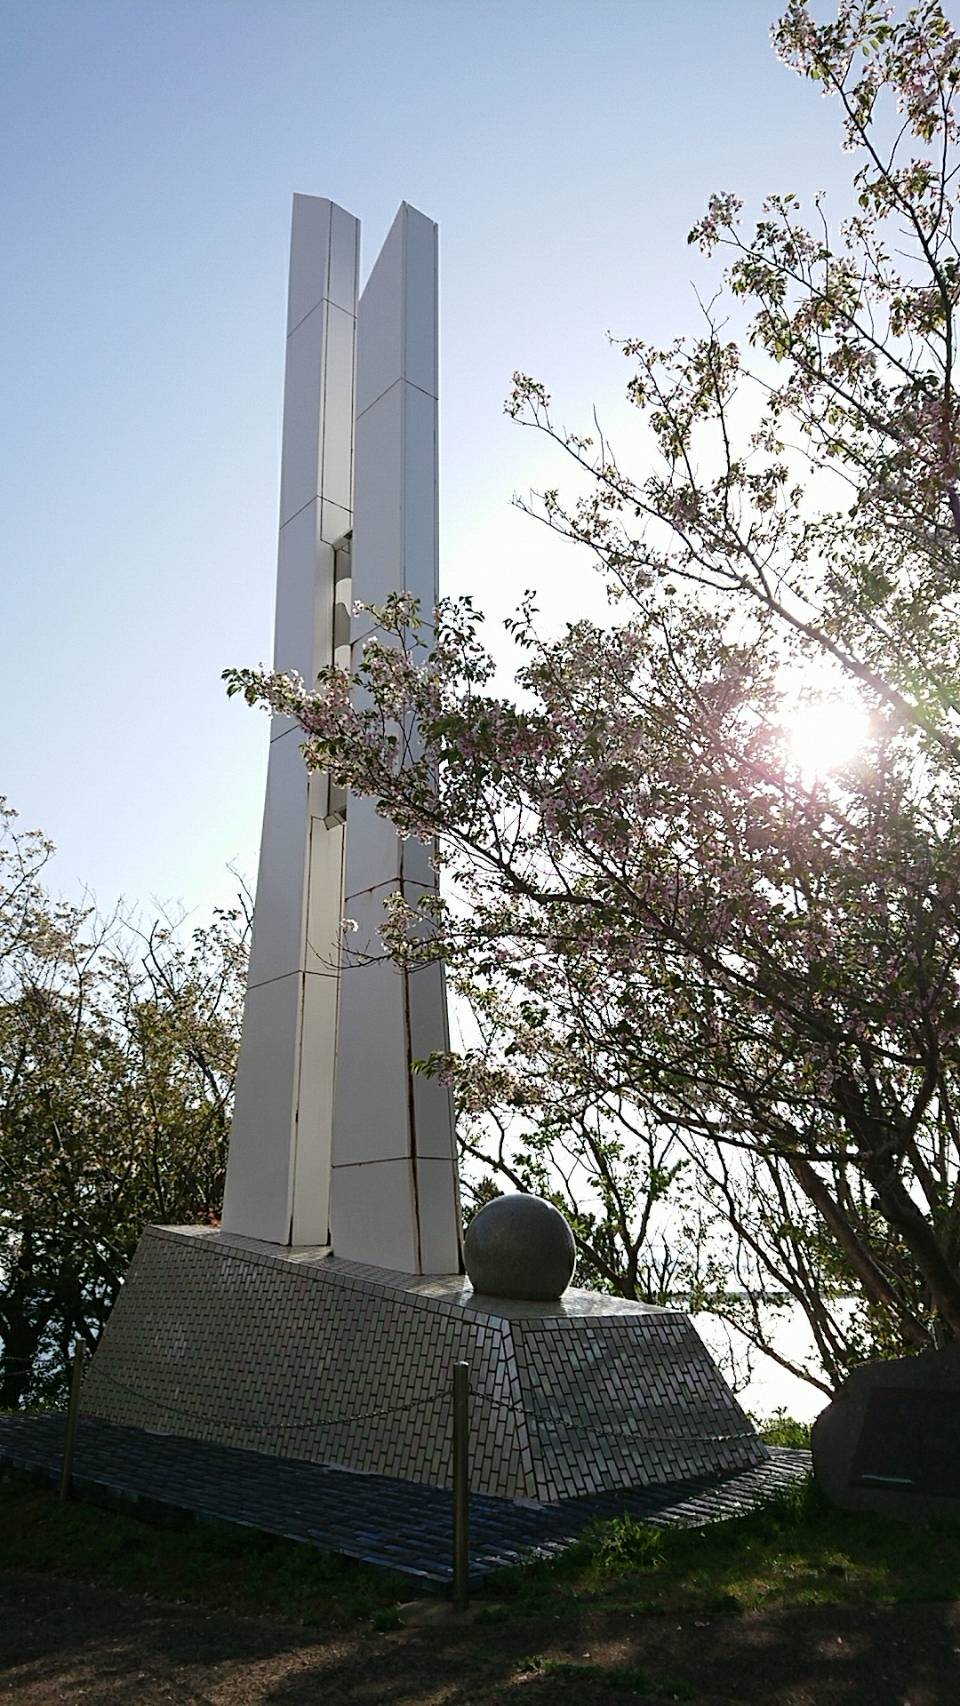 壱岐 春一番の塔